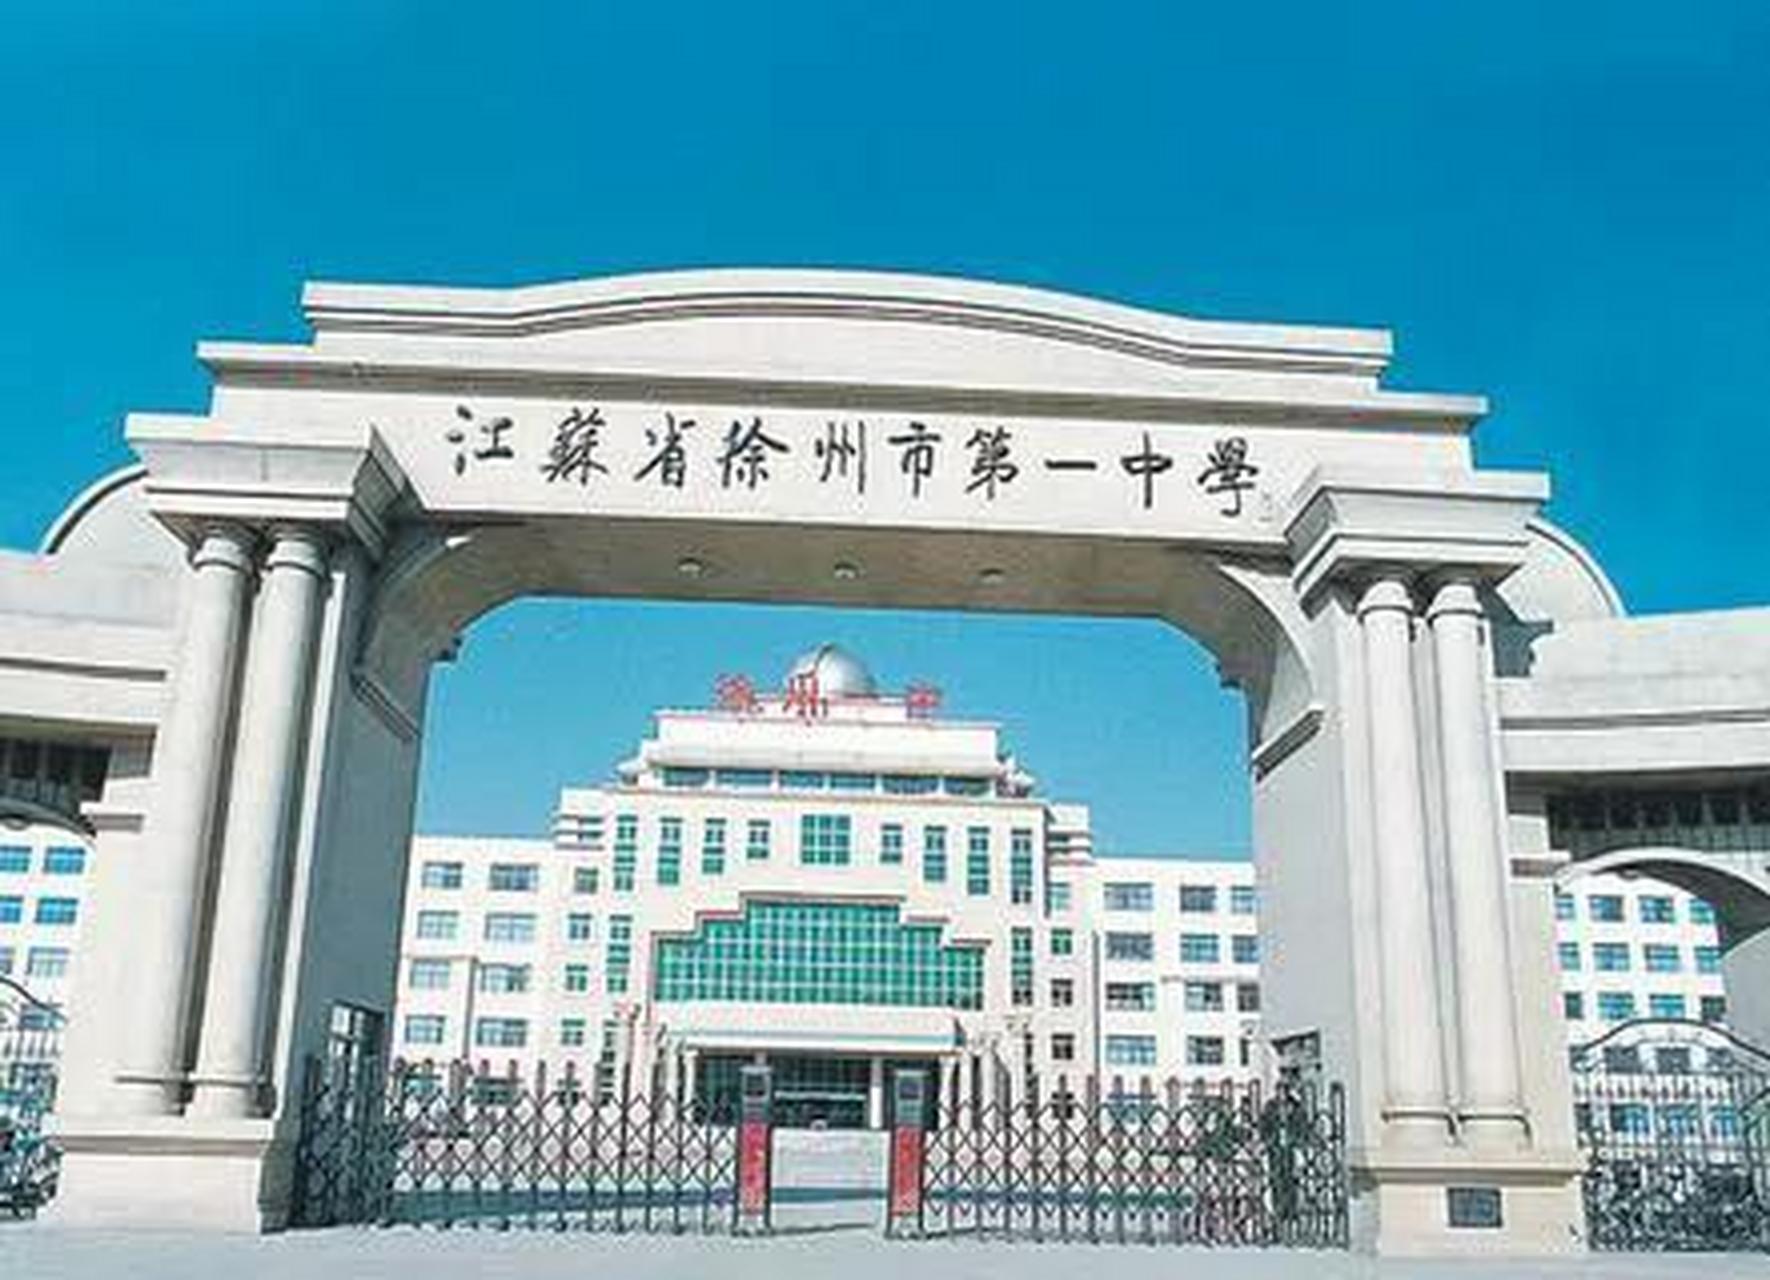 不说徐州四中早已改名,原徐州四中与徐州六中合并成为了徐州高级中学